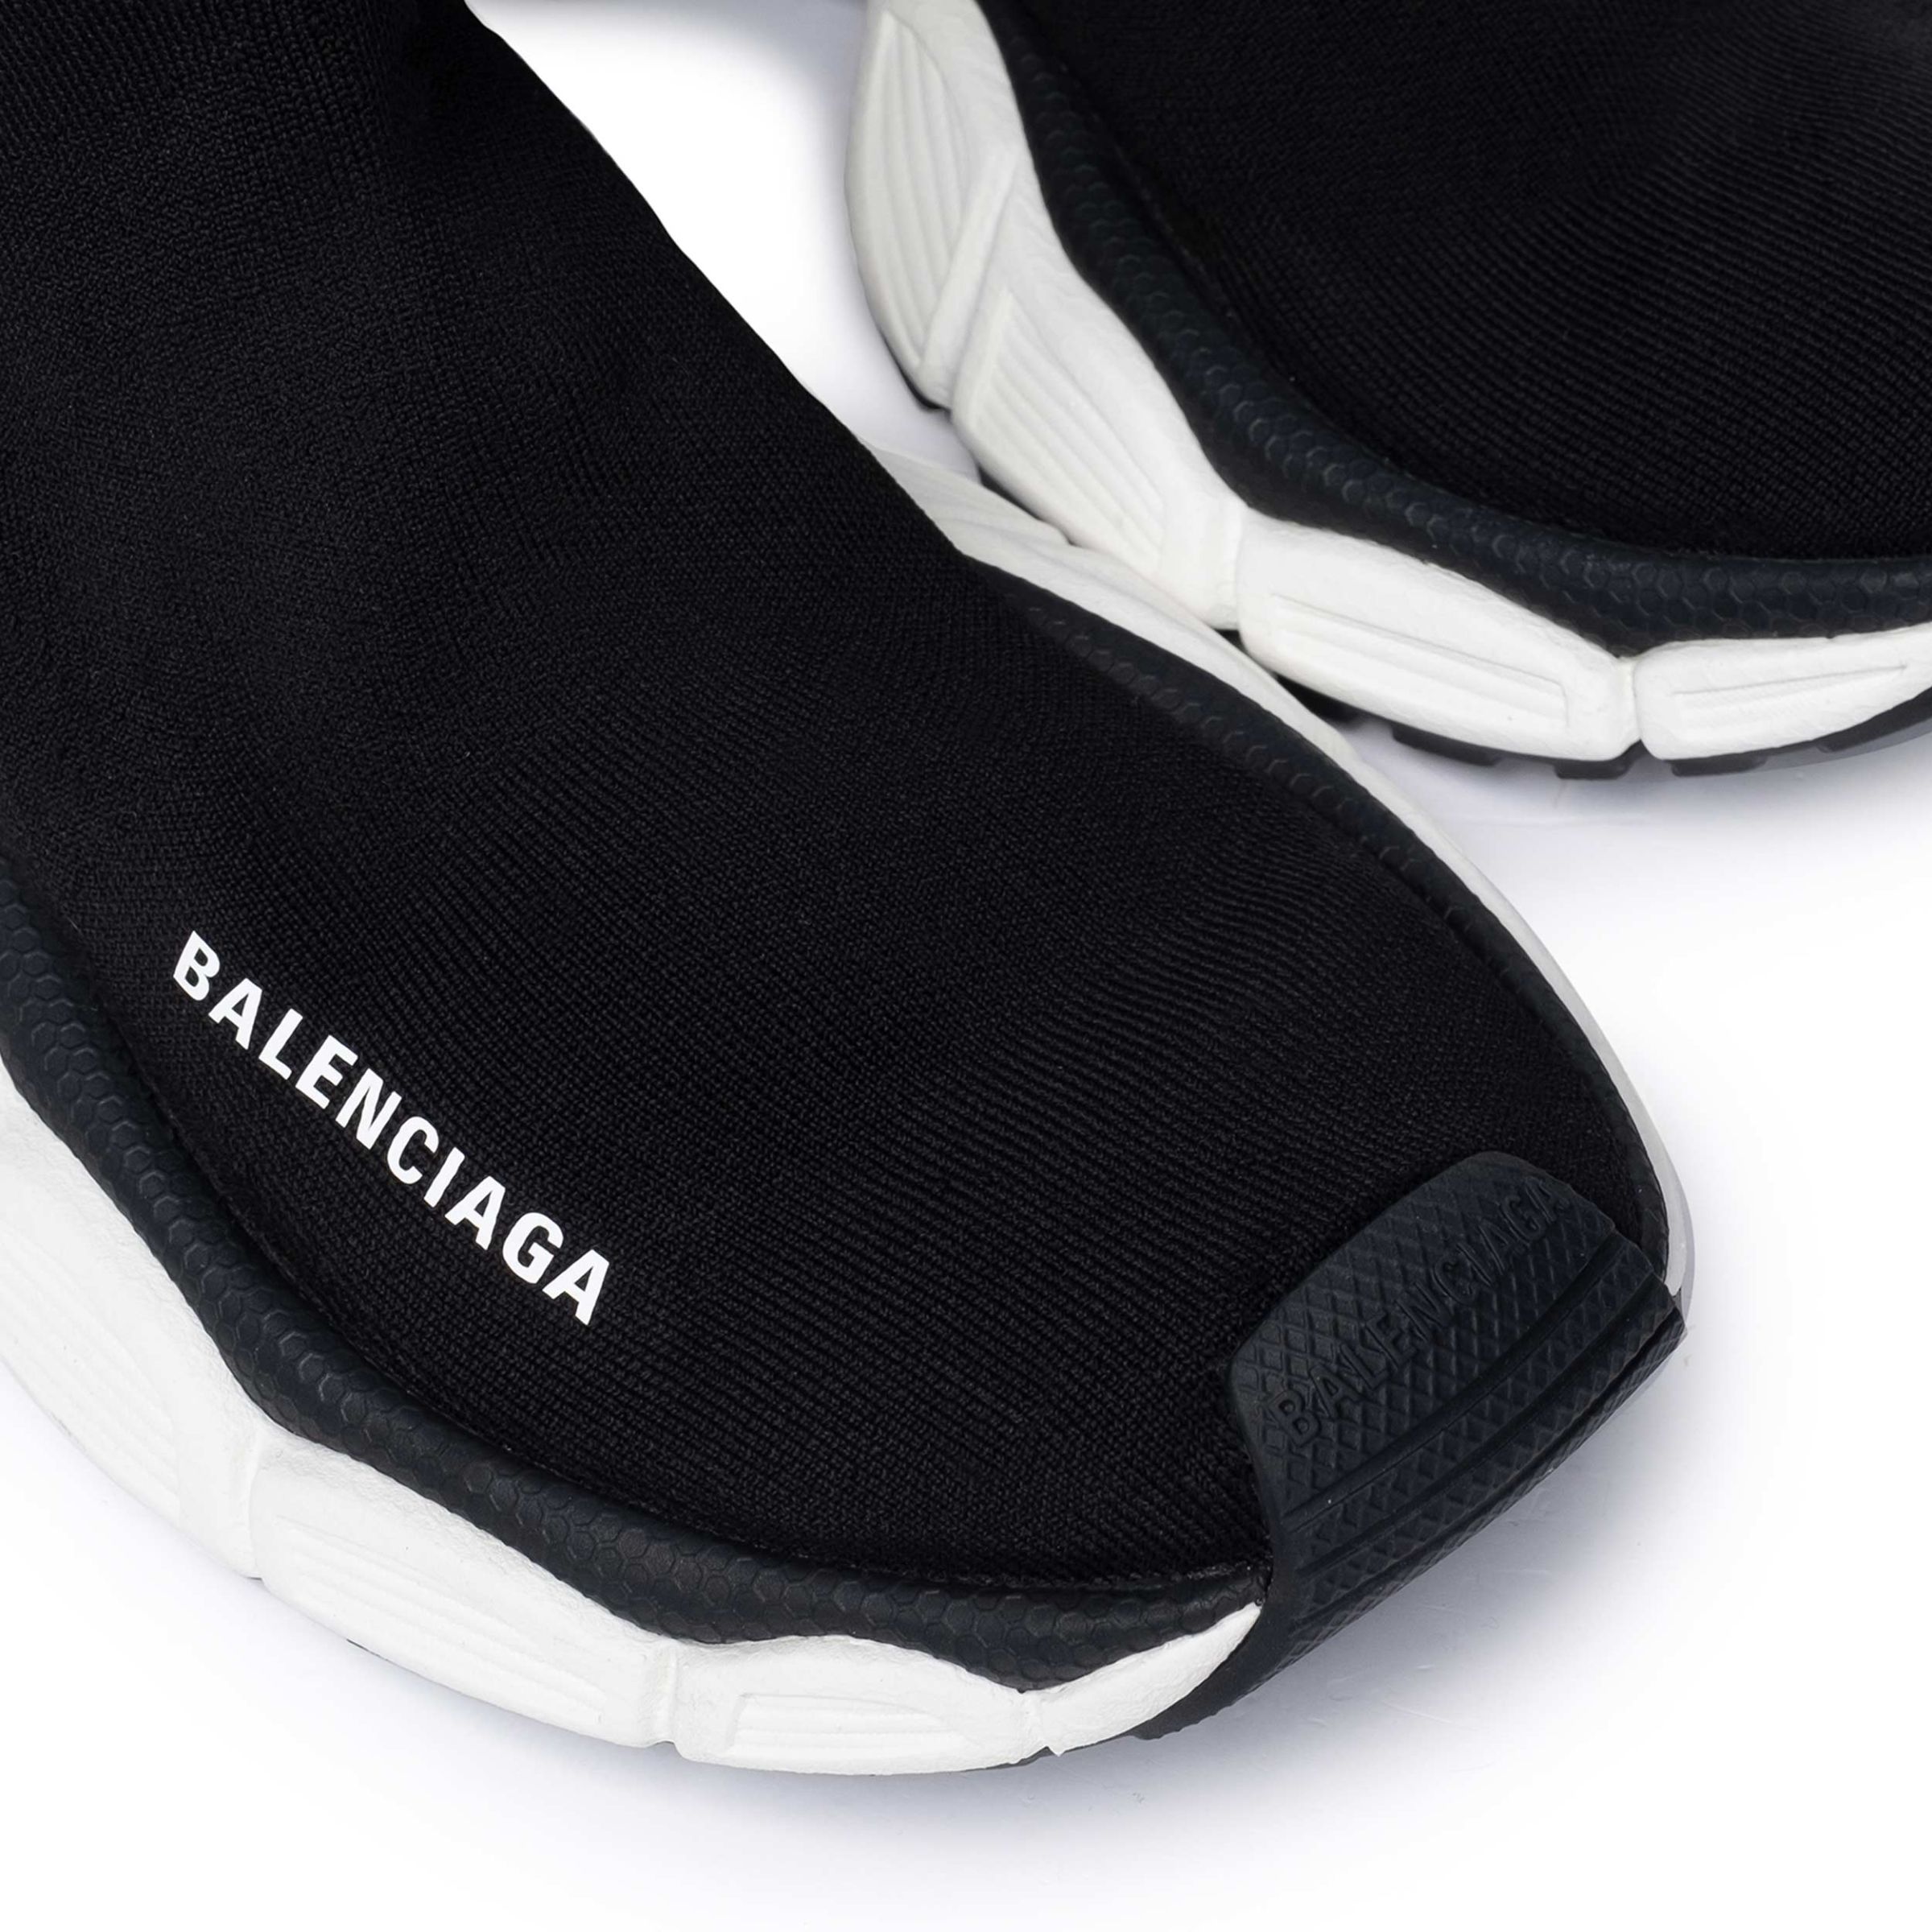 Кроссовки Balenciaga 3XL Sock Recycled Knit черные